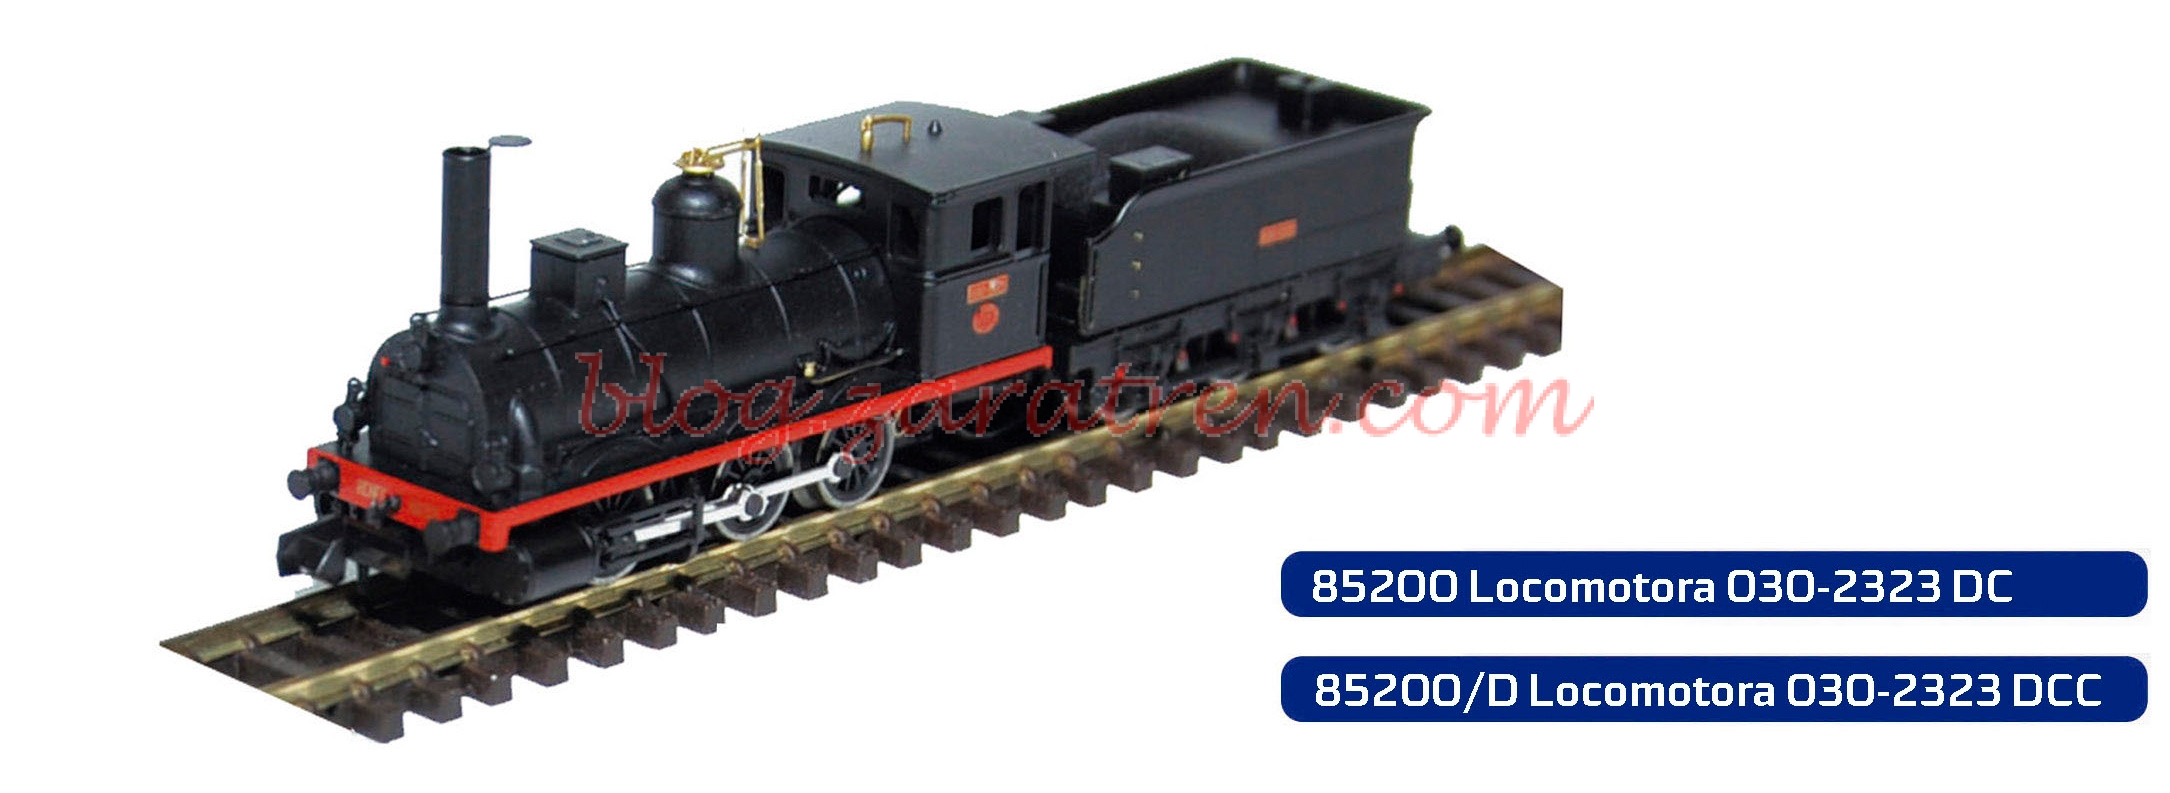 Mabar – Reedición locomotora 030 en versión analógica y digital, diversas referencias 85200, 85201 y 85202, Escala N